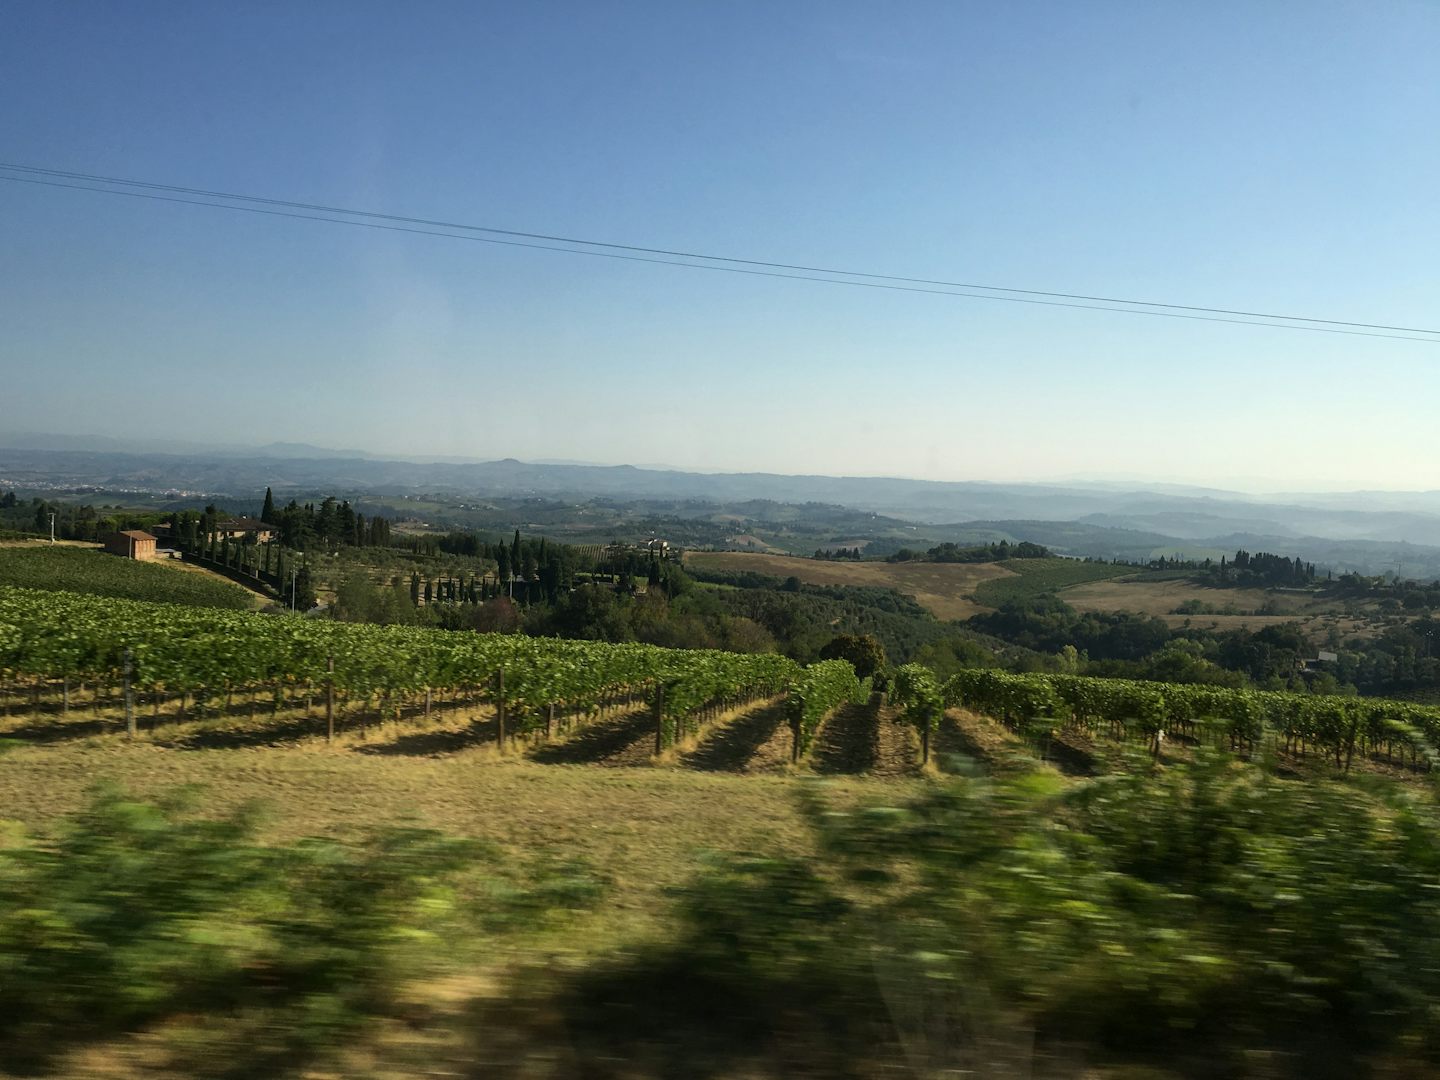 Driving thru Tuscany! Wine vineyards